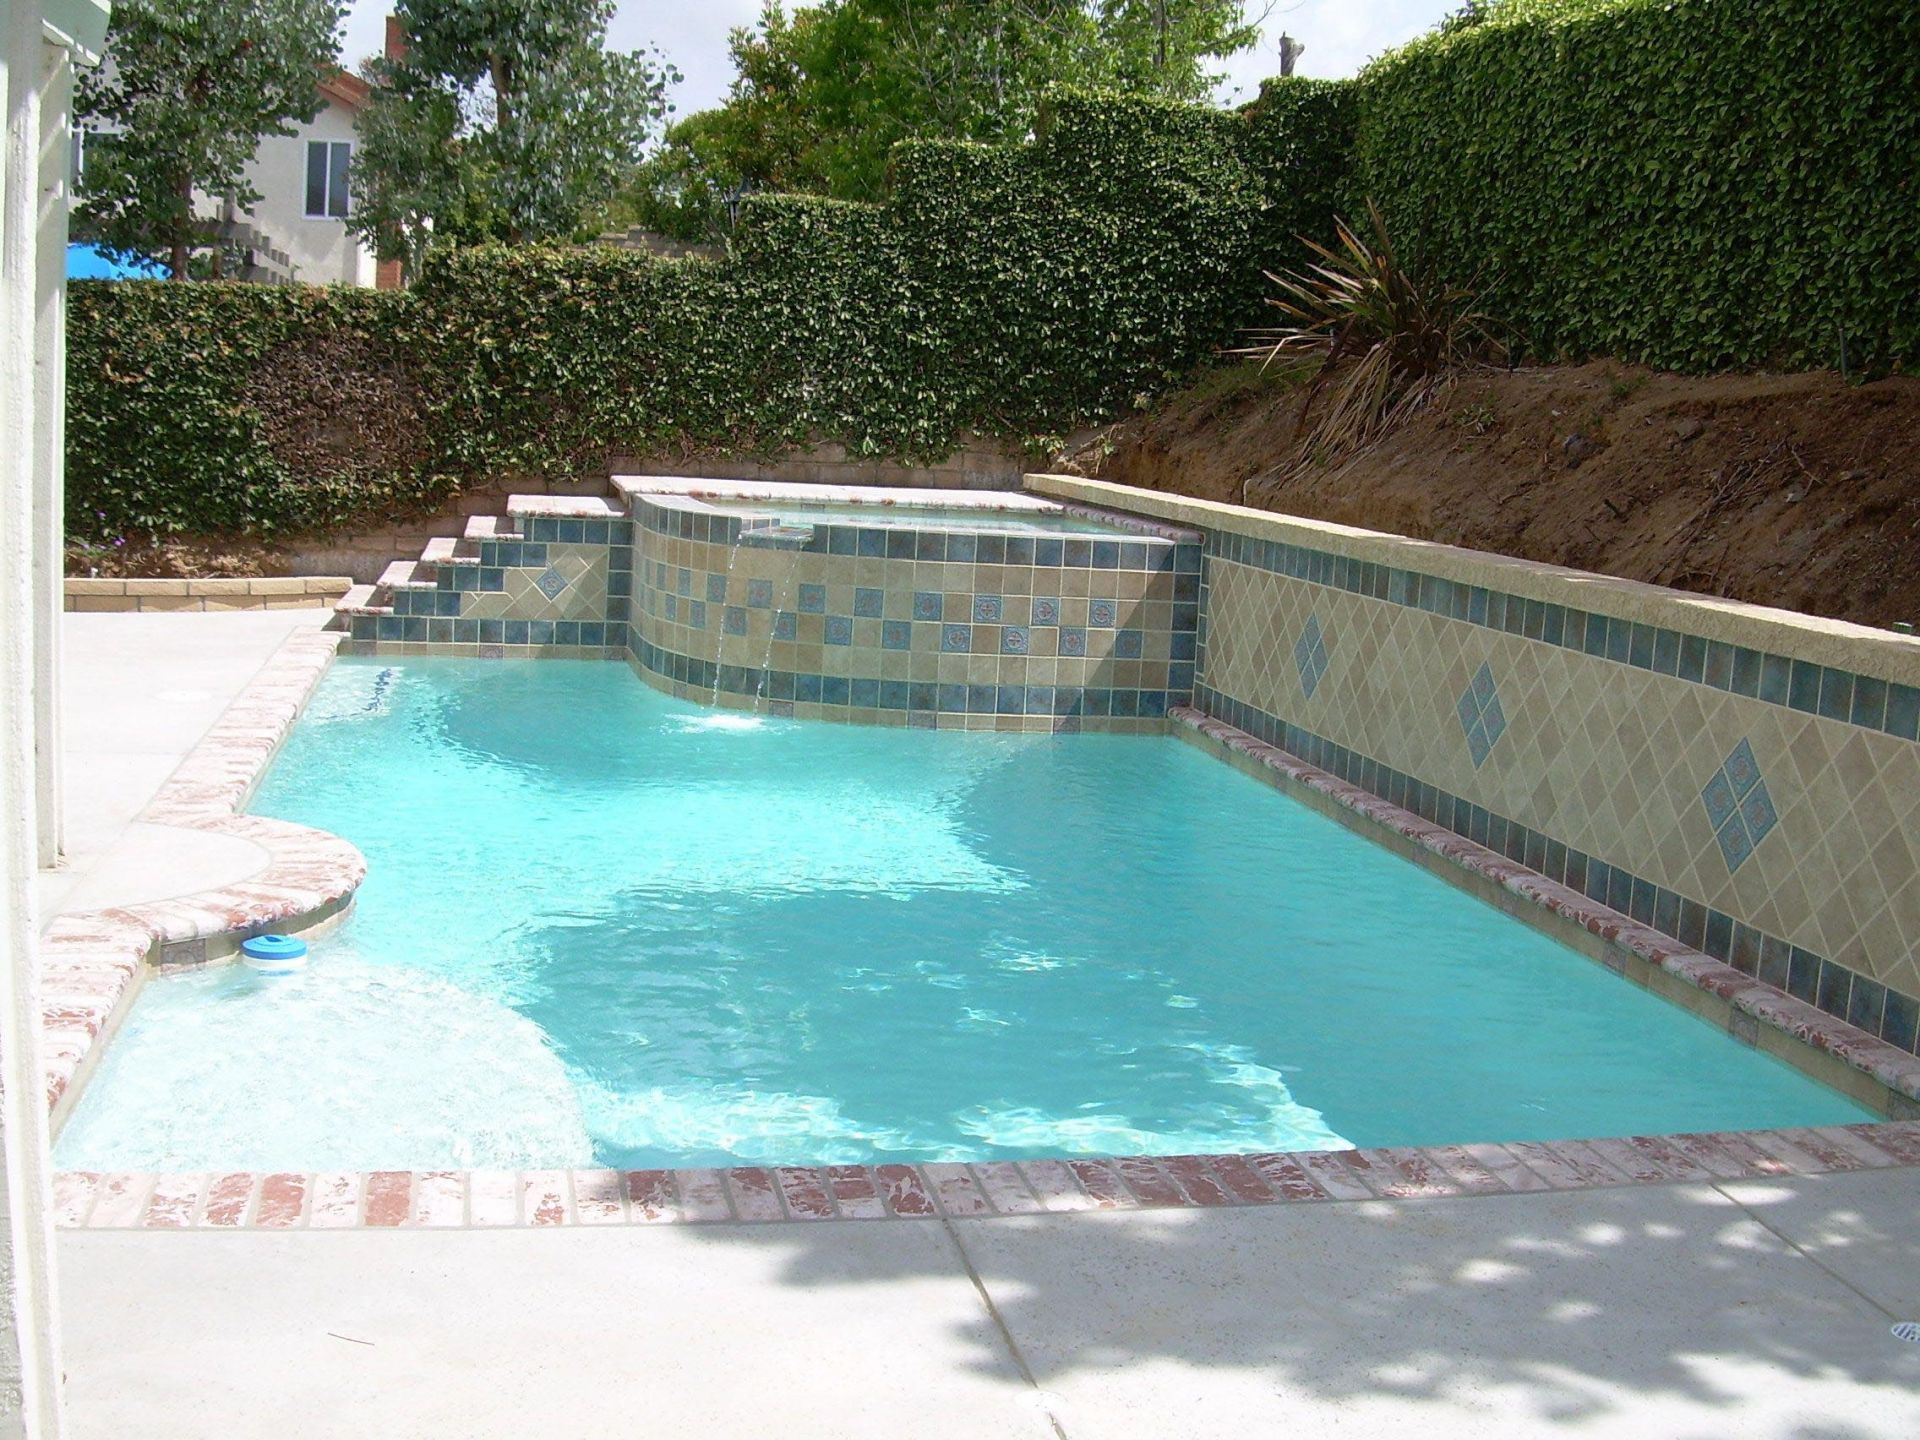 Pool for Small Backyard